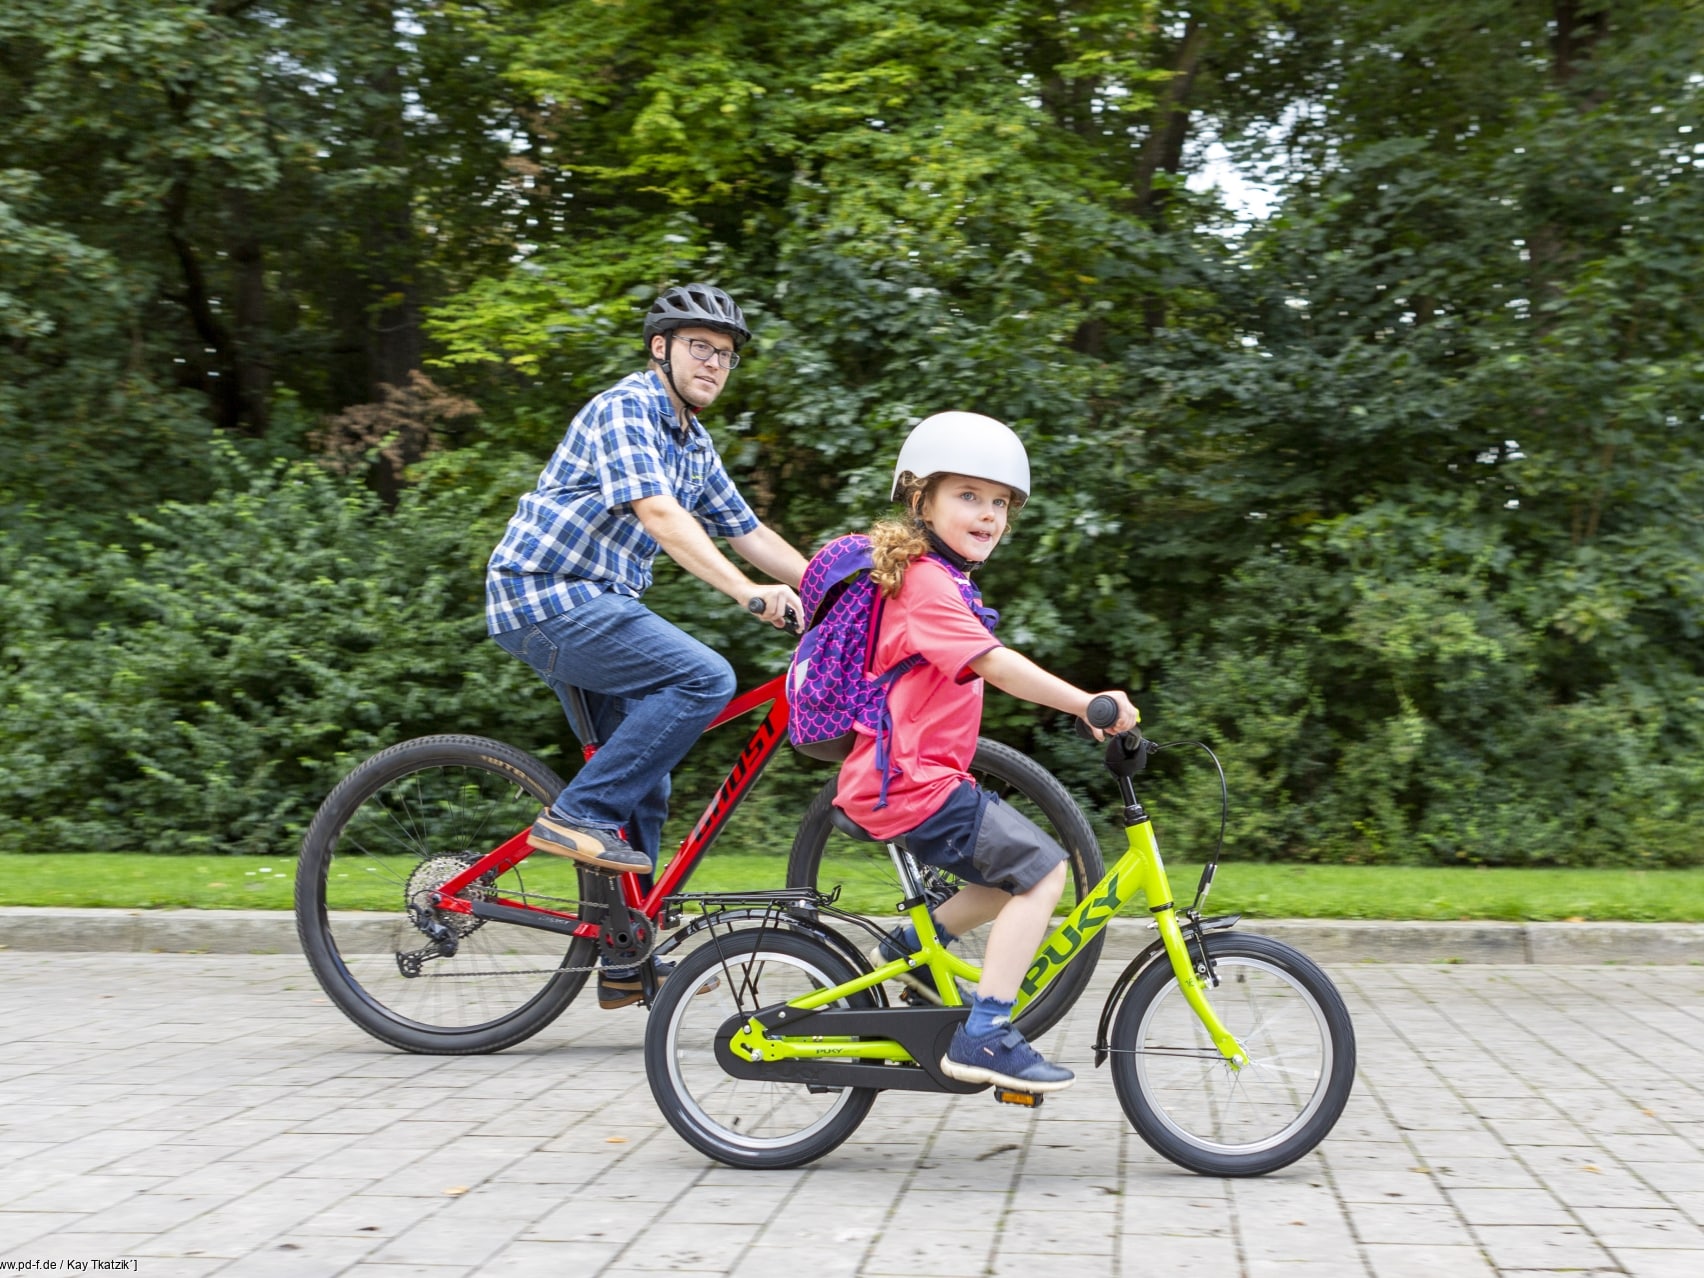 Diese zehn Übungen bieten eine vielseitige Möglichkeit, Kinder spielerisch auf den Schulweg per Fahrrad vorzubereiten und zu verbessern.